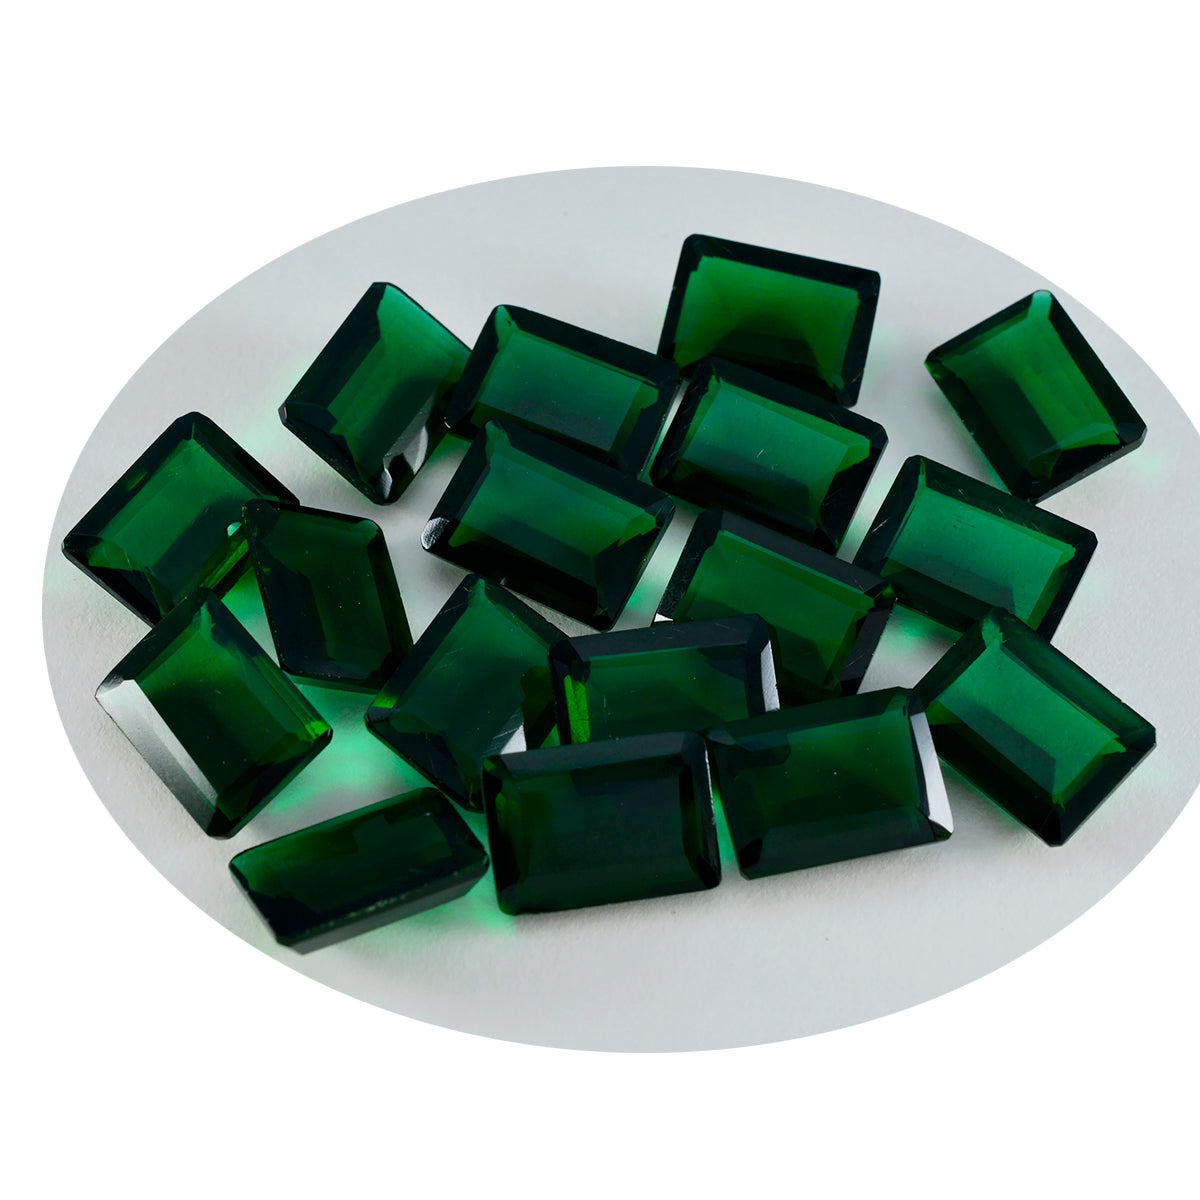 riyogems 1 шт. зеленый изумруд cz ограненный 7x9 мм восьмиугольной формы красивый качественный драгоценный камень